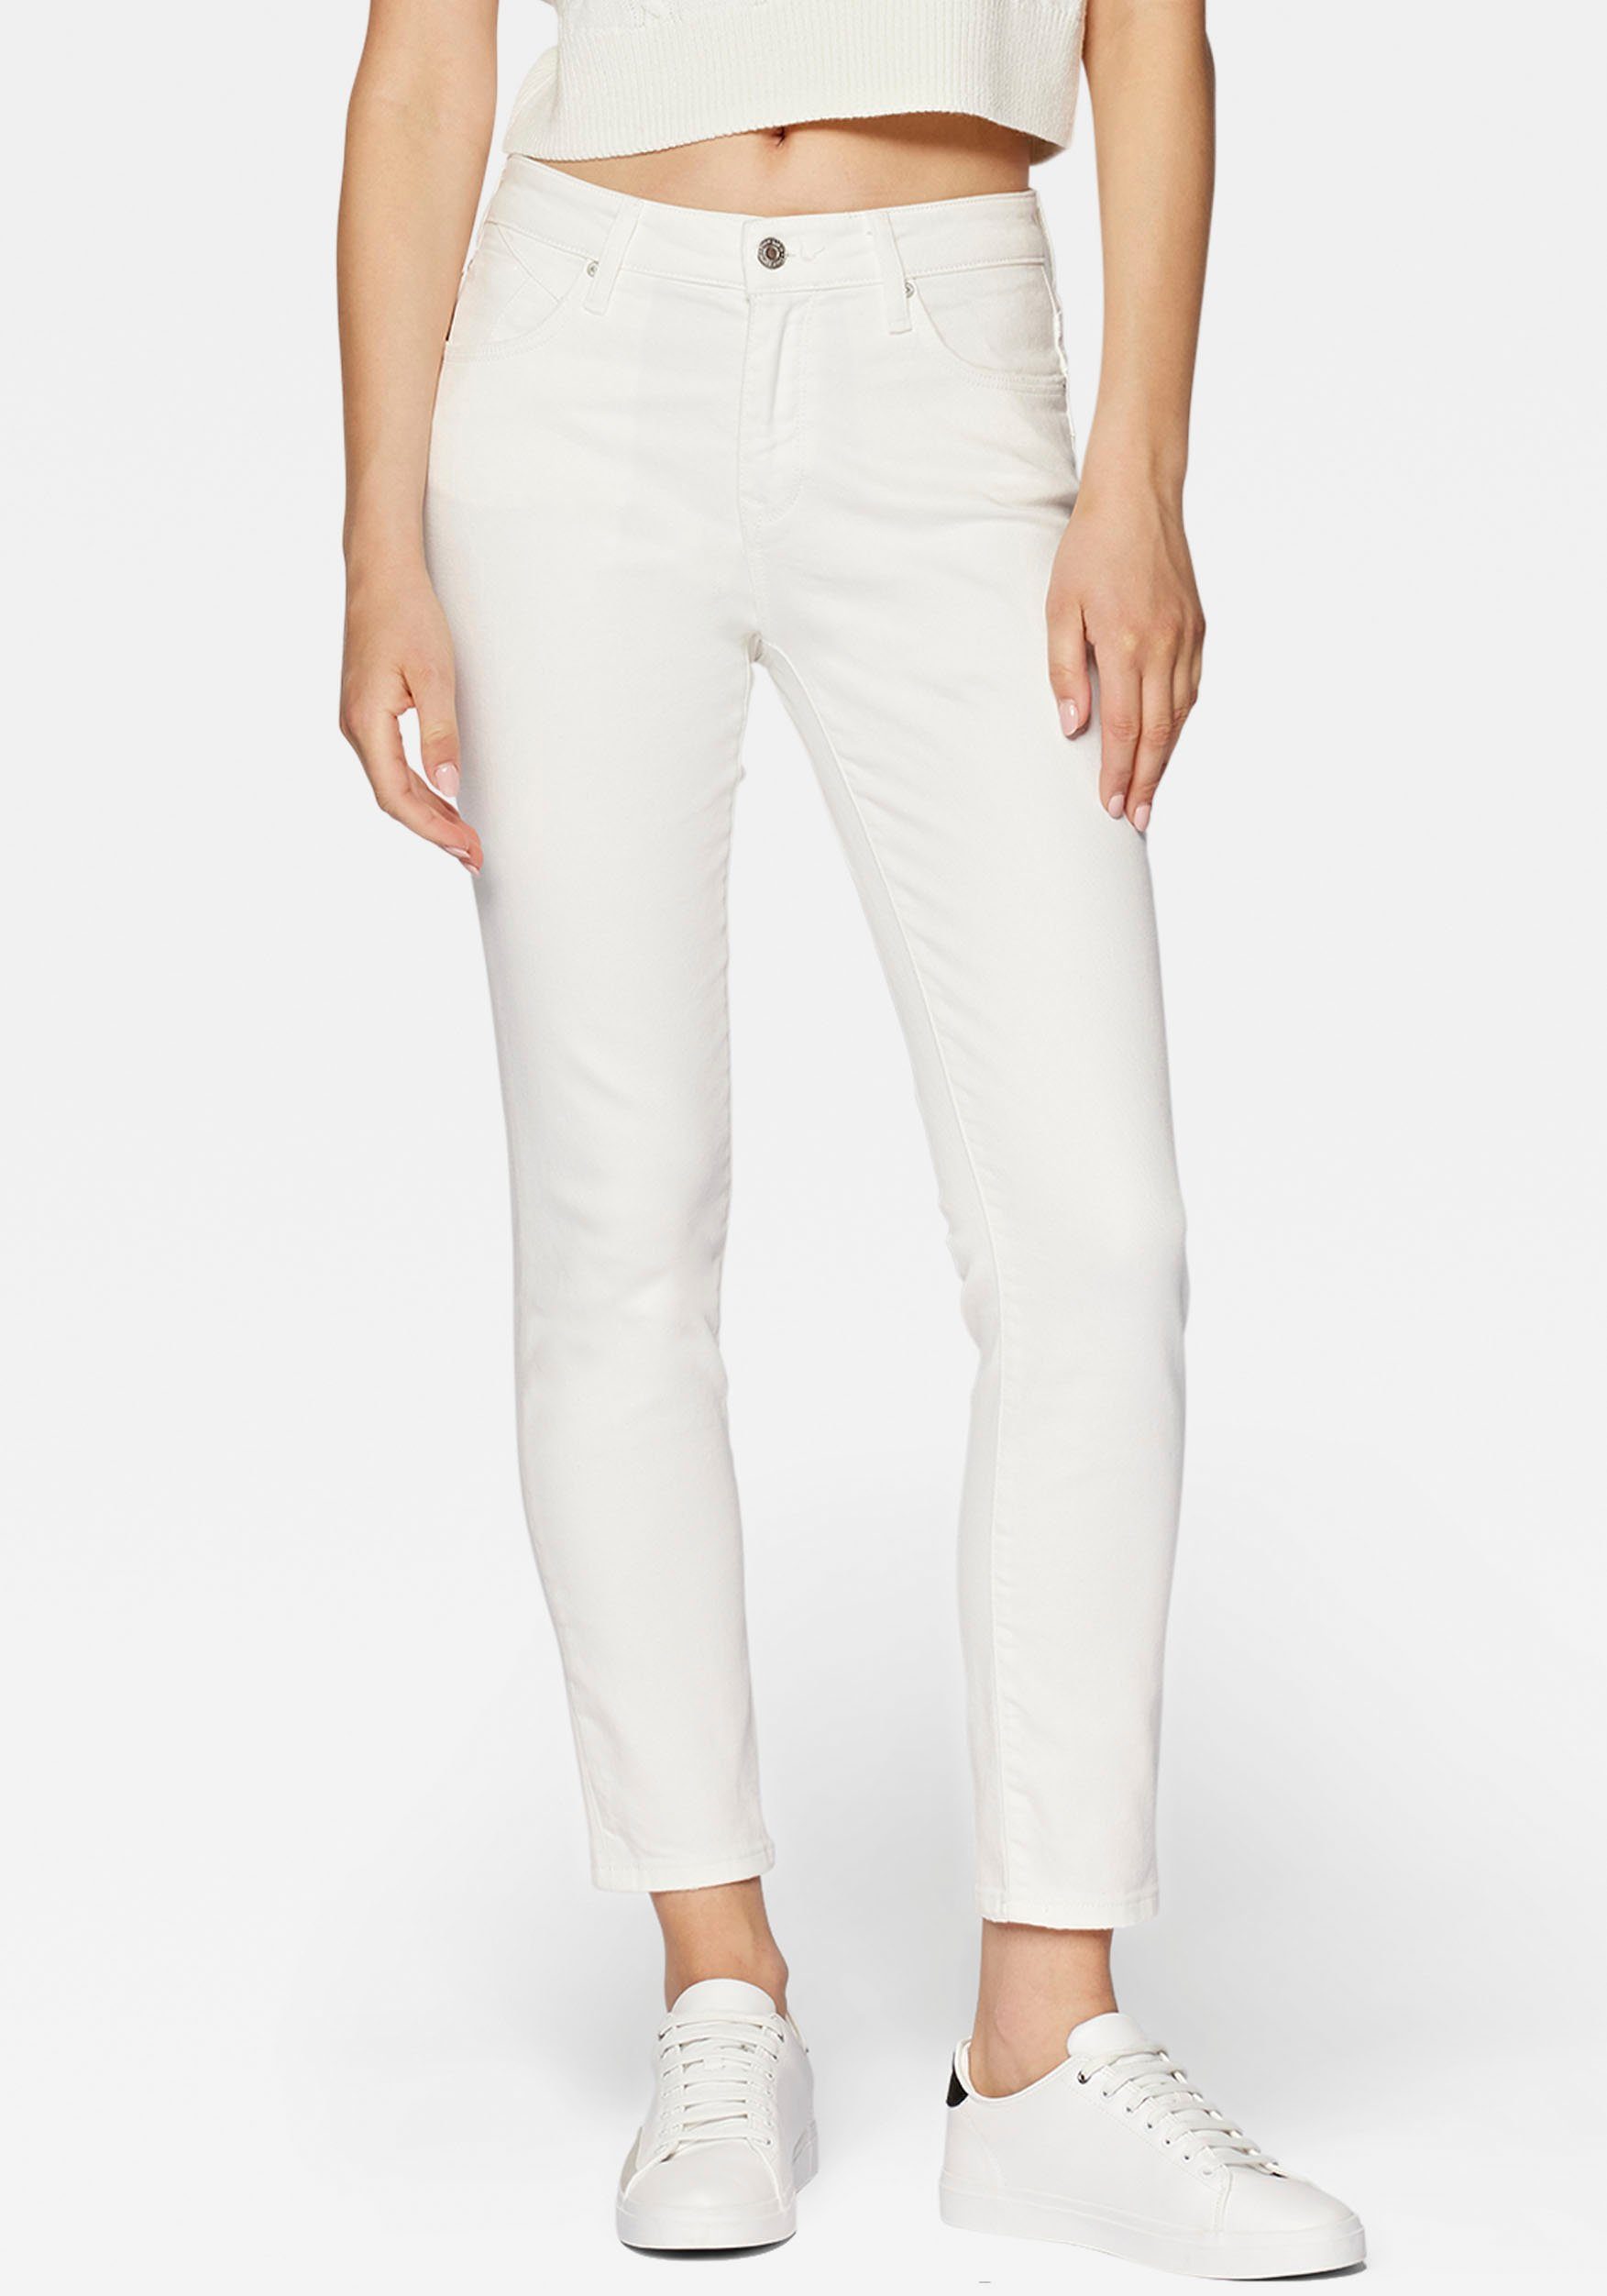 Mavi Slim-fit-Jeans trageangenehmer Stretchdenim dank hochwertiger Verarbeitung white | 